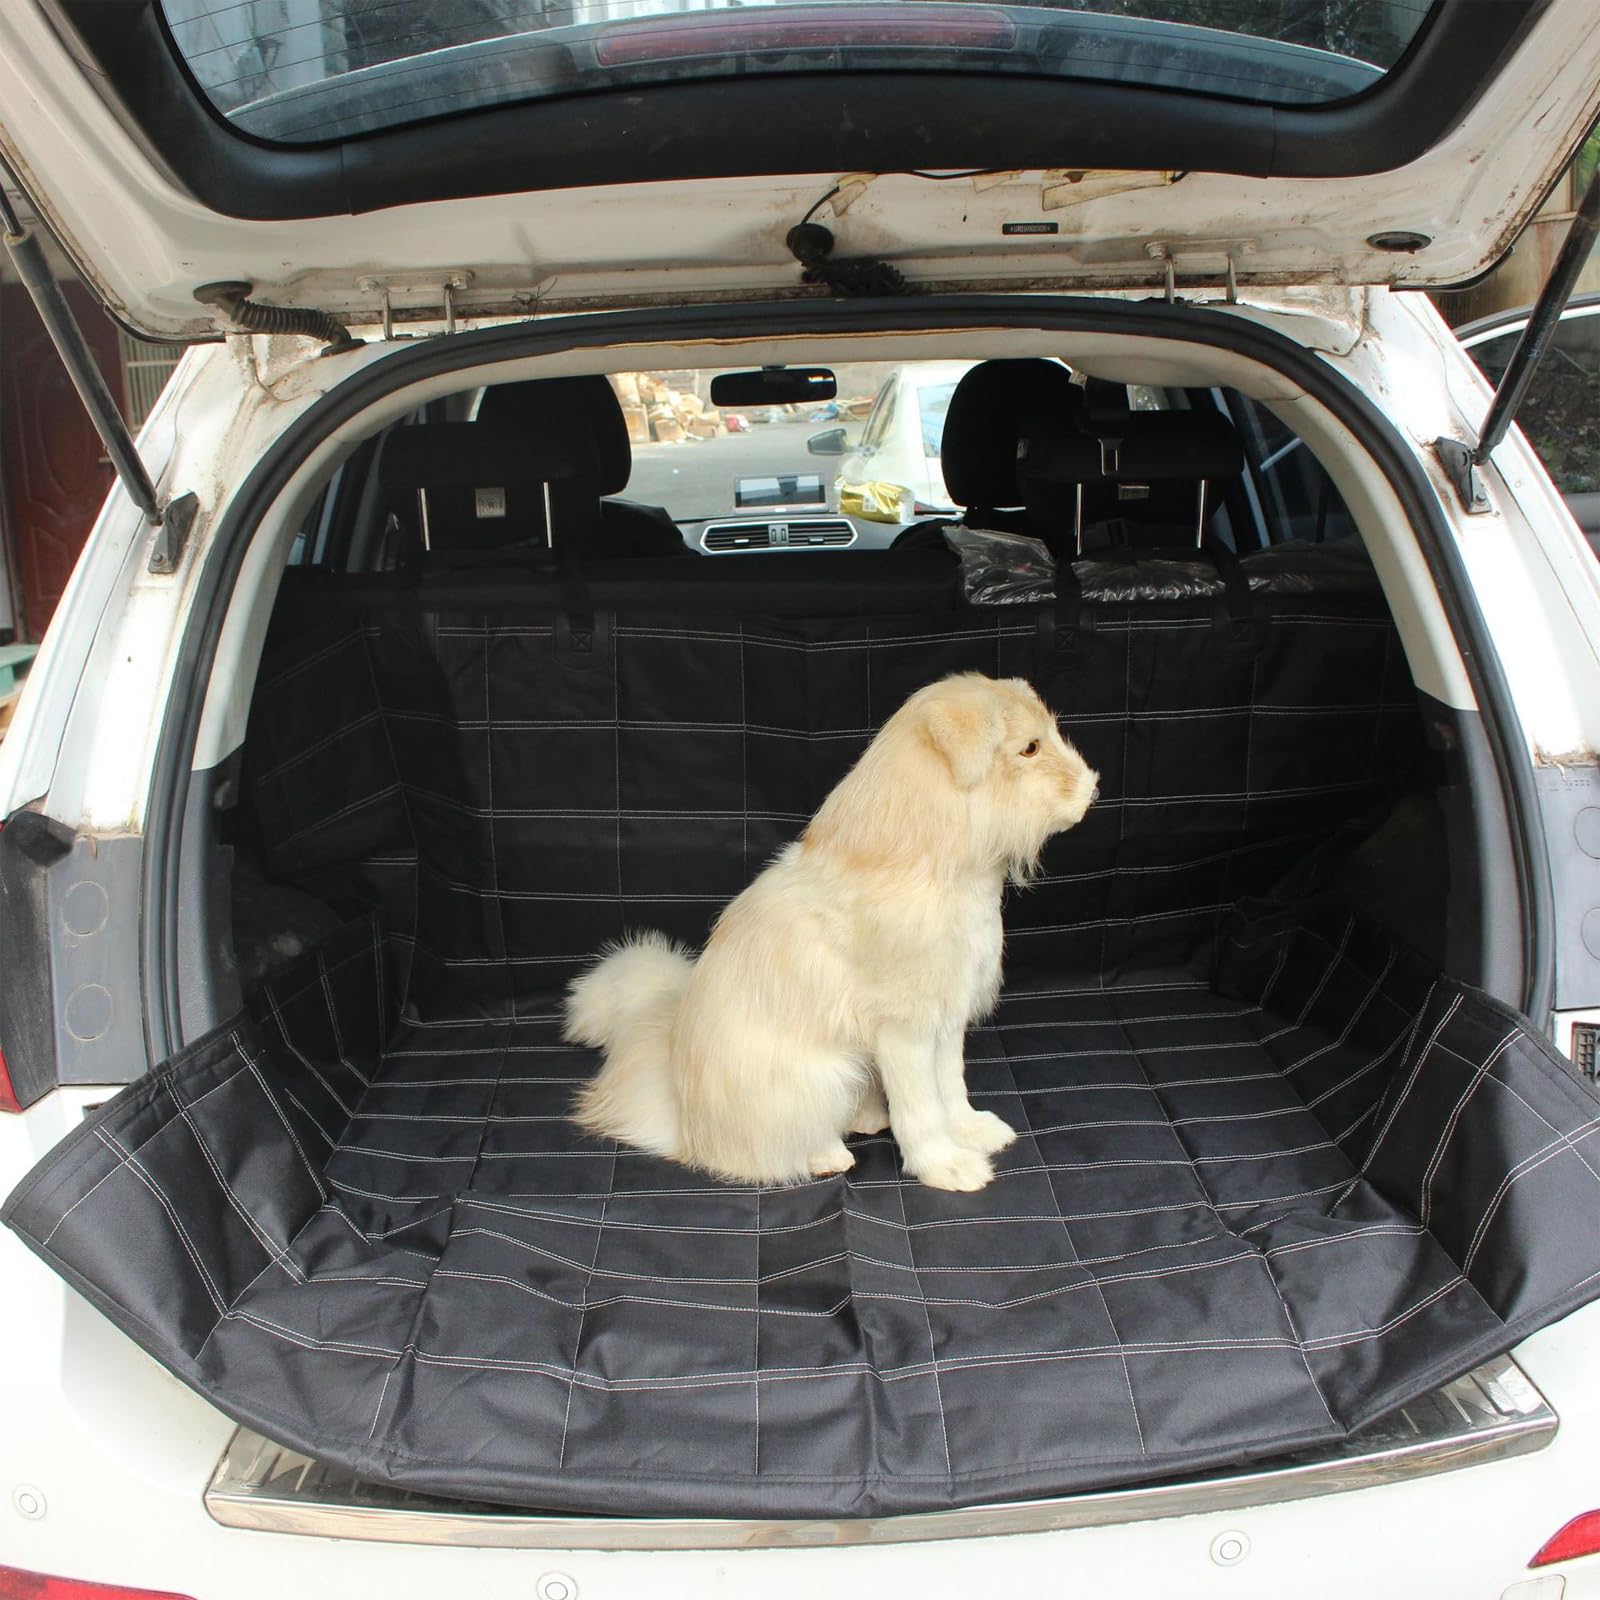 MLQLCKYH Kofferraum, Autositzbezug für Hunde, Hängematte für die Rückbank des Autos, Kratzfeste Autositzauflage für Hunde, Rücksitzbezug für Hunde, geeignet für SUVs, Autos (Kofferraum) von MLQLCKYH